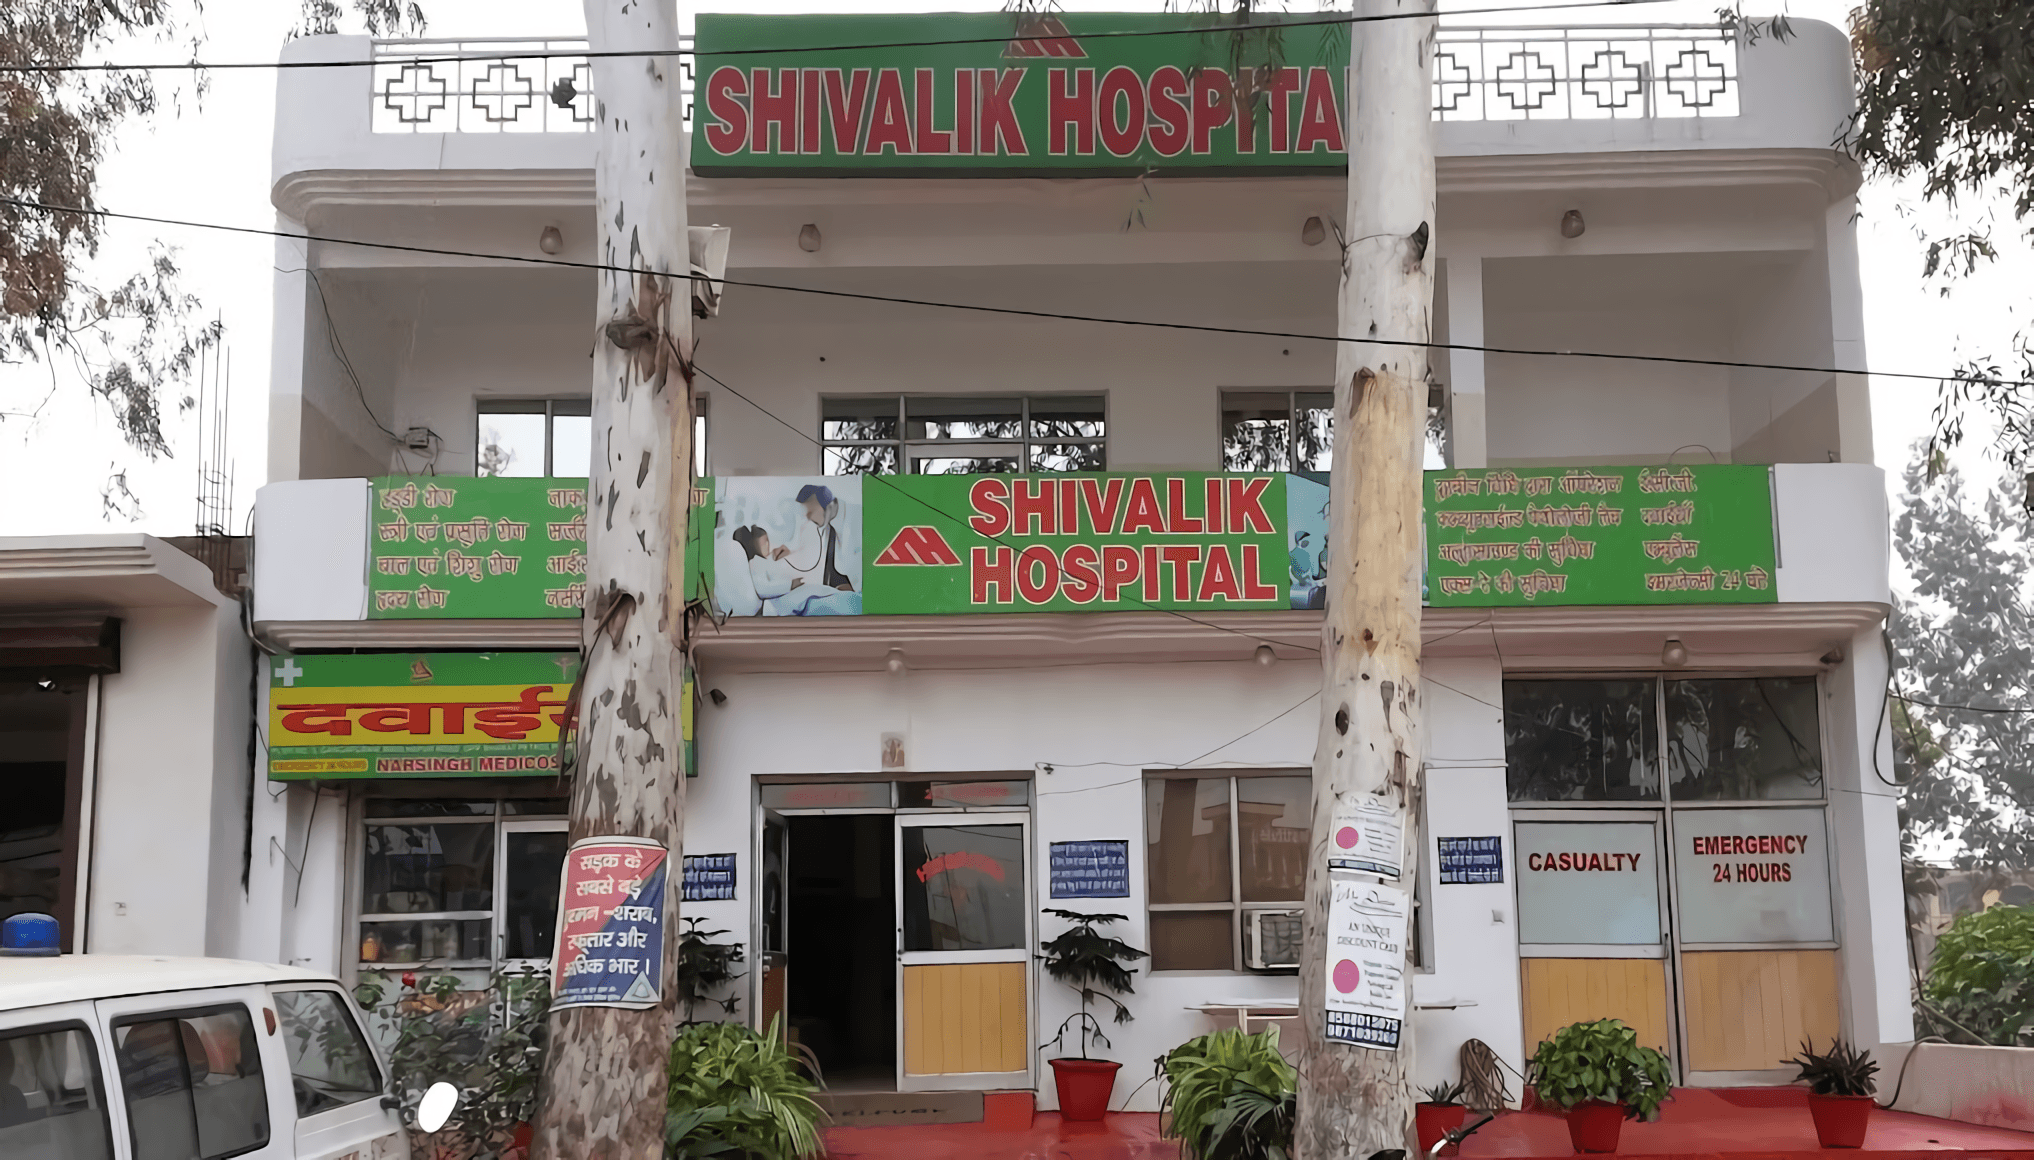 Shivalik Hospital